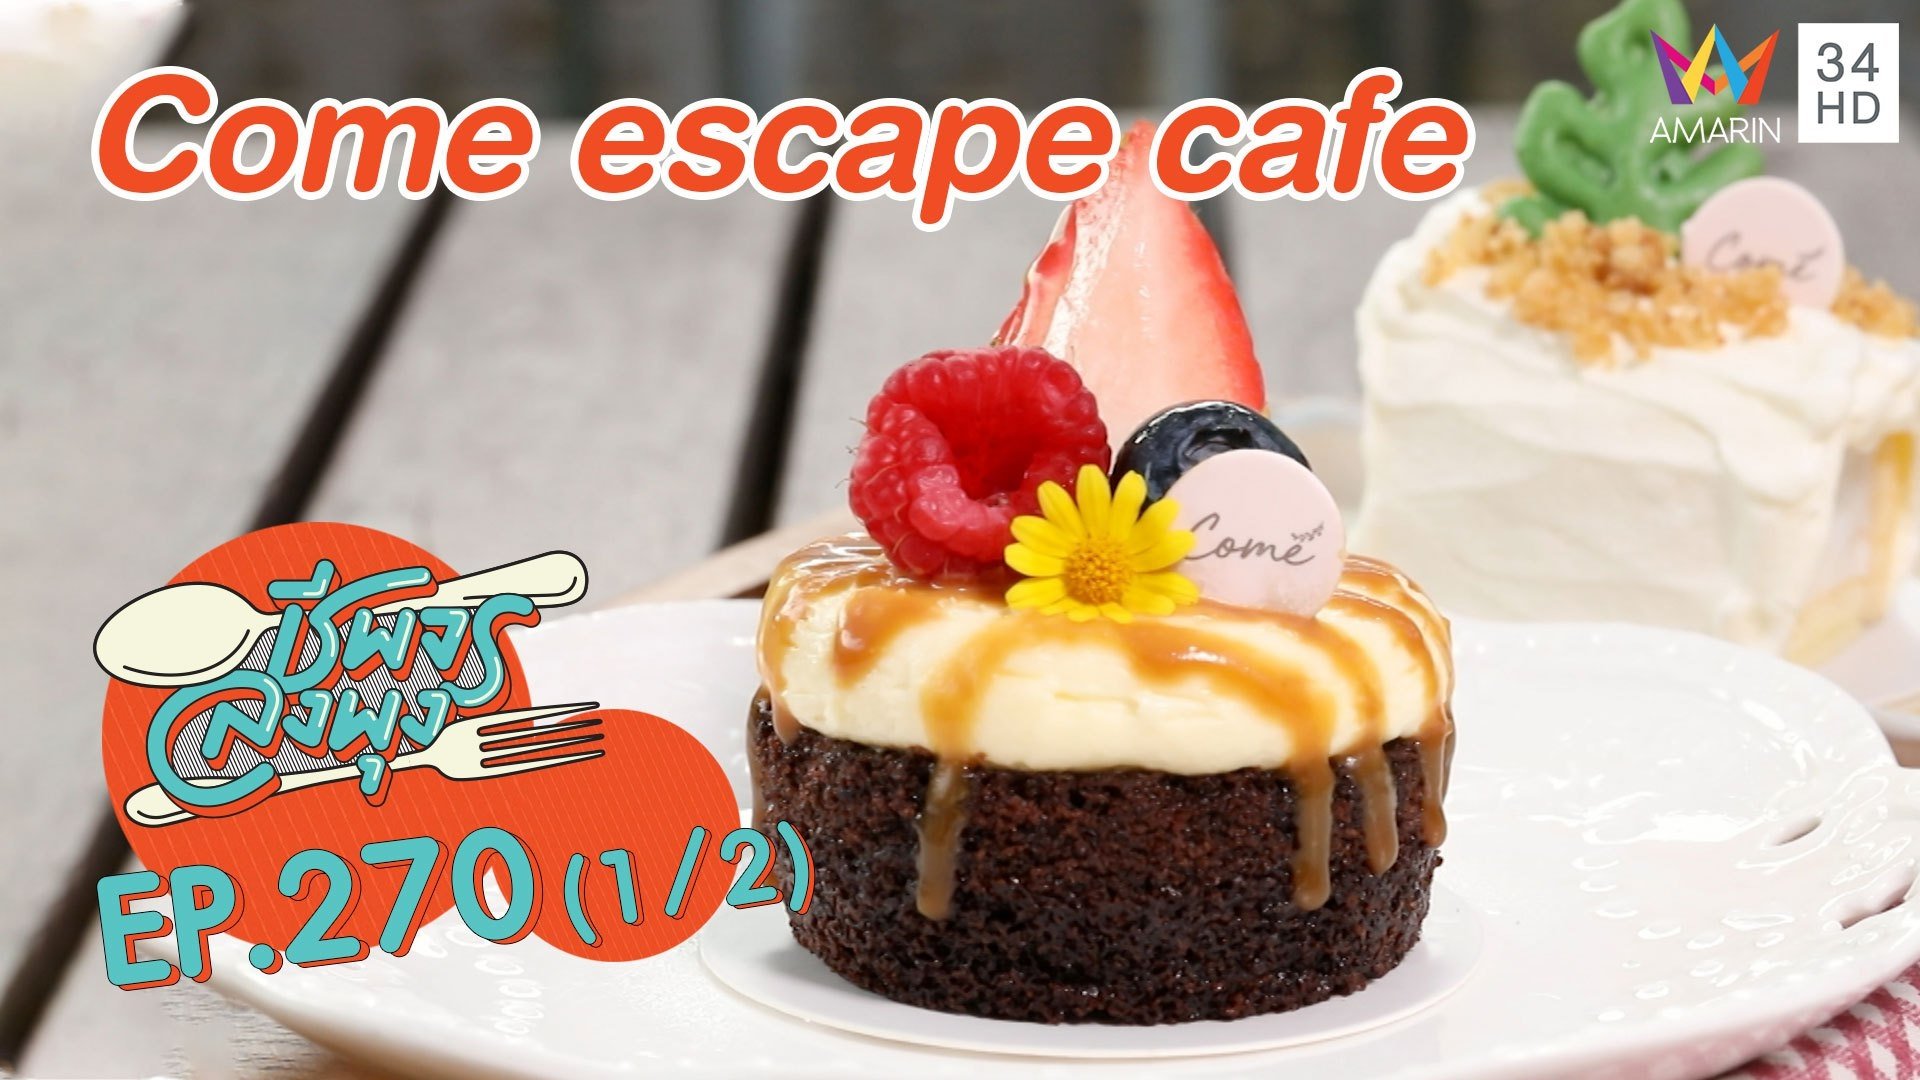 เอาใจสายหวาน ร้าน Come escape cafe | ชีพจรลงพุง | 23 ม.ค. 64 (1/2) | AMARIN TVHD34